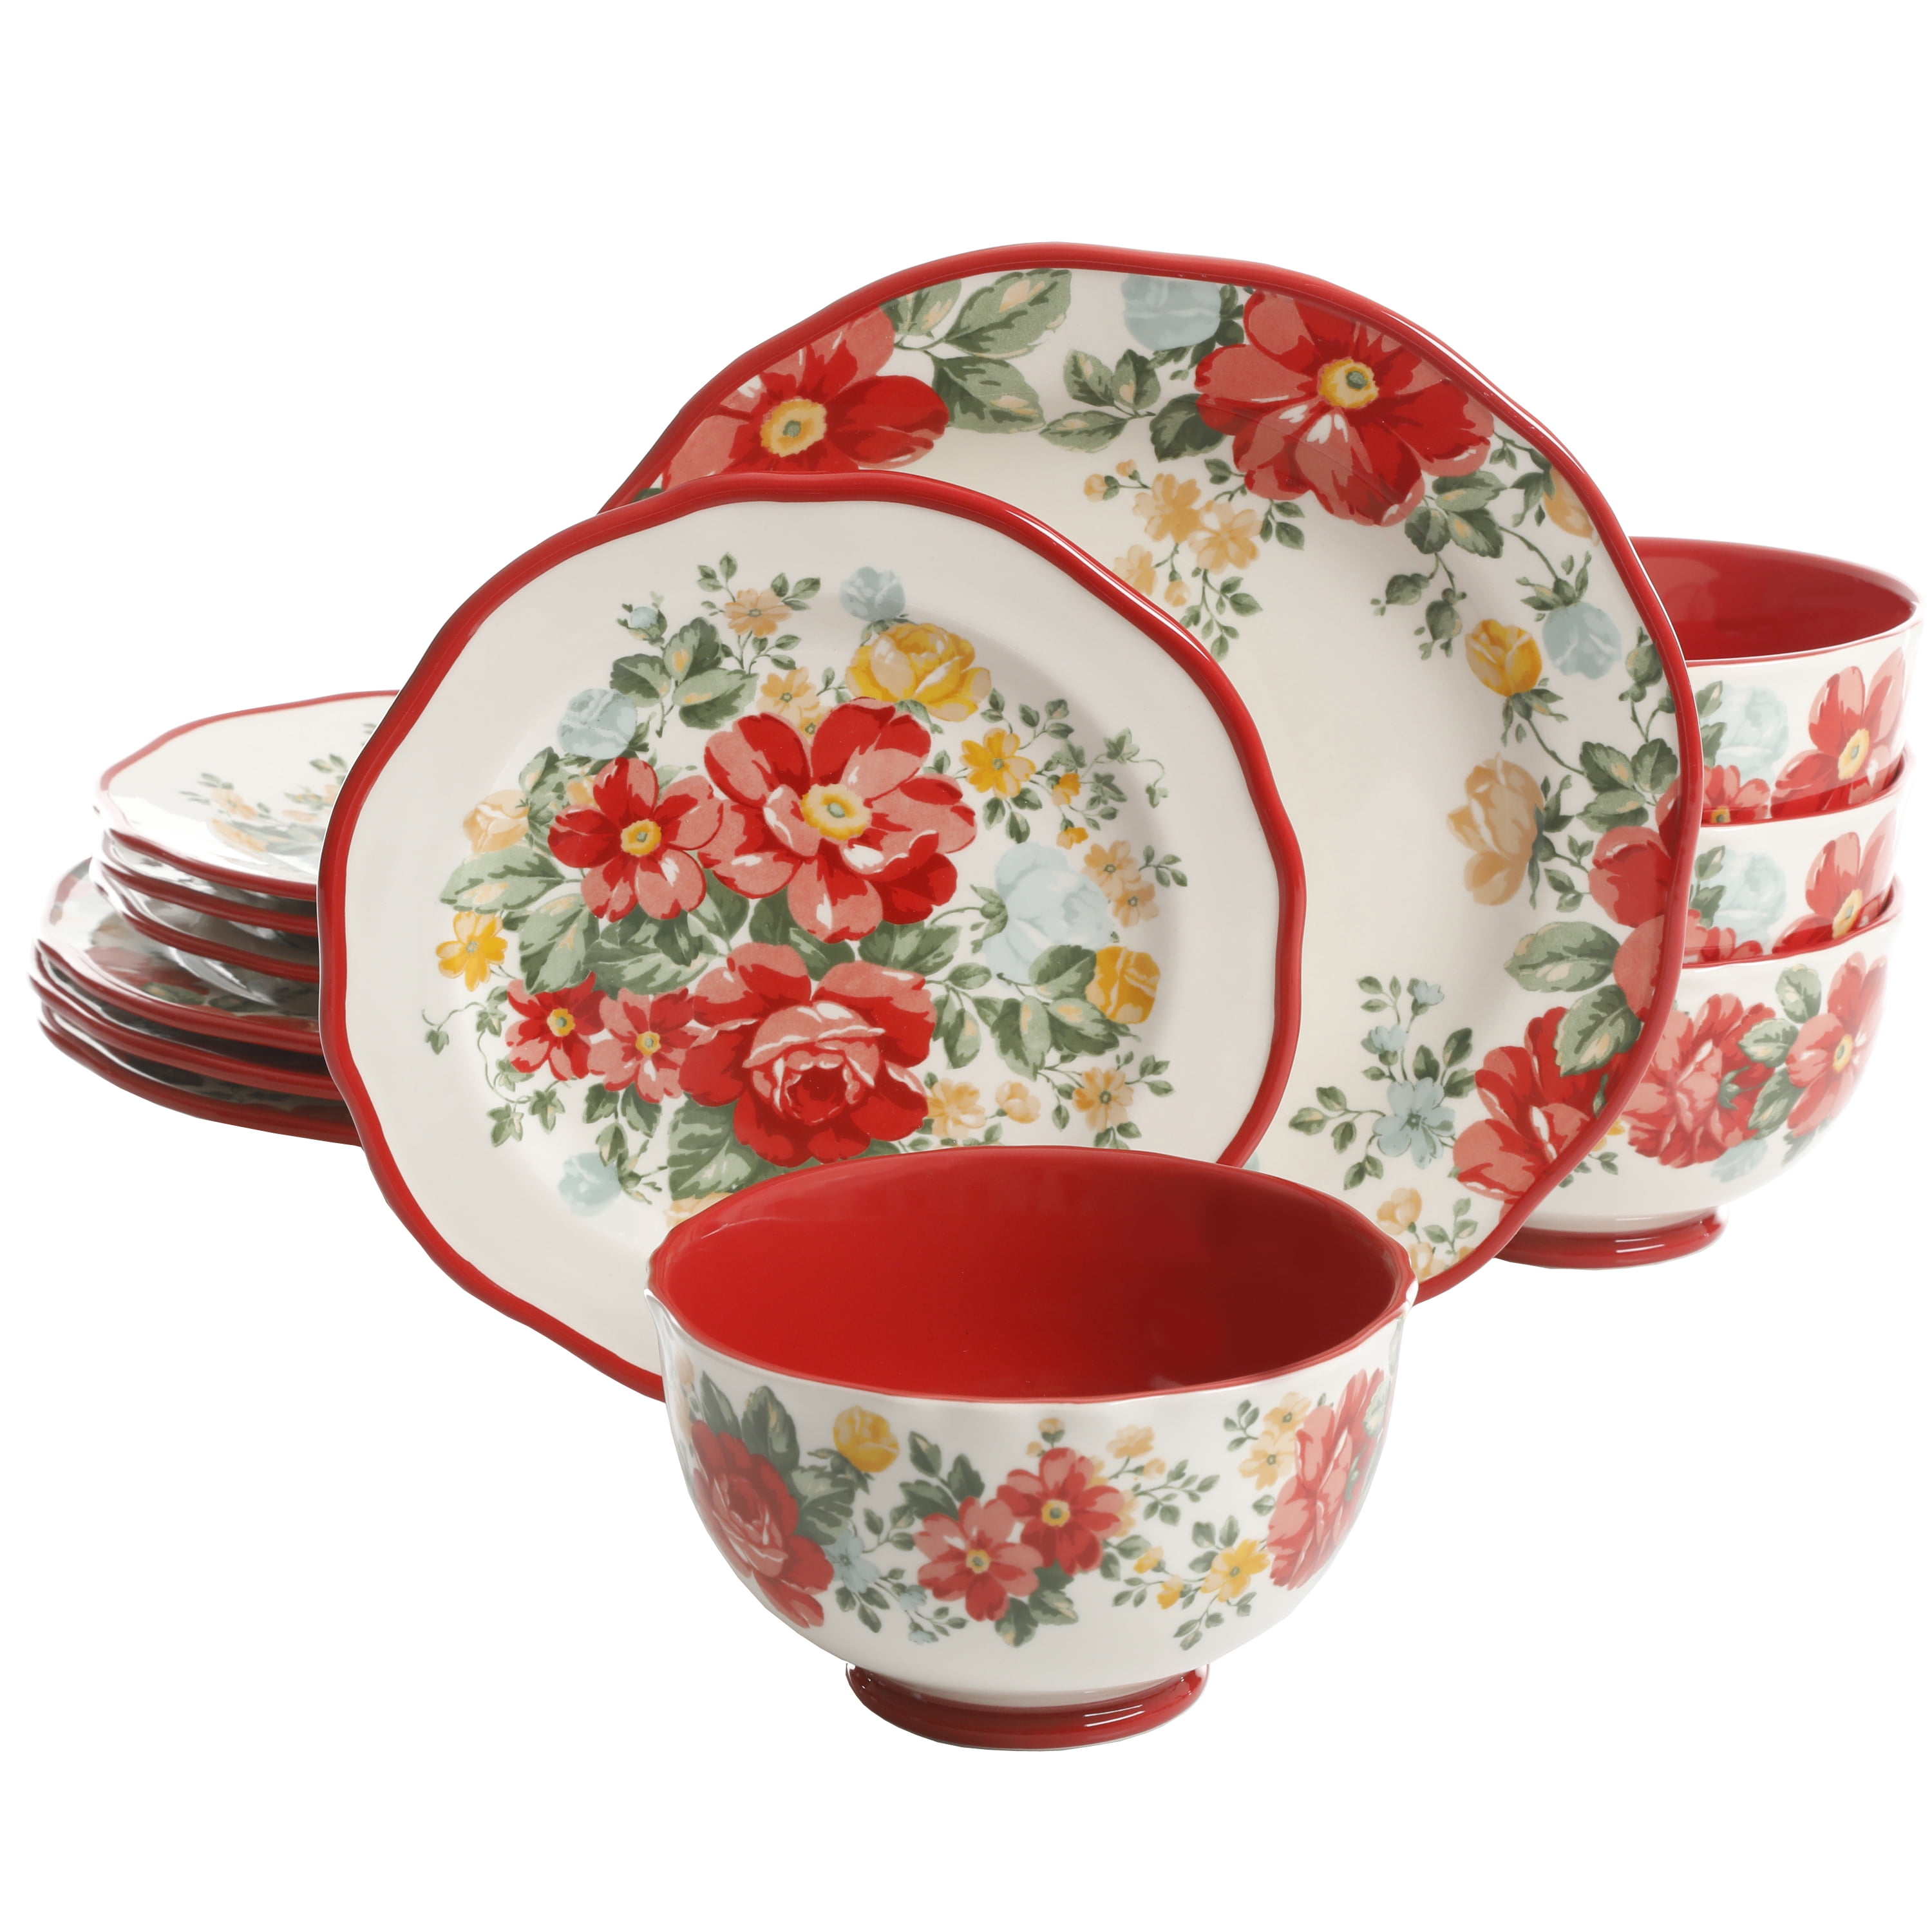 The Pioneer Woman Vintage Floral 12-Piece Dinnerware Set